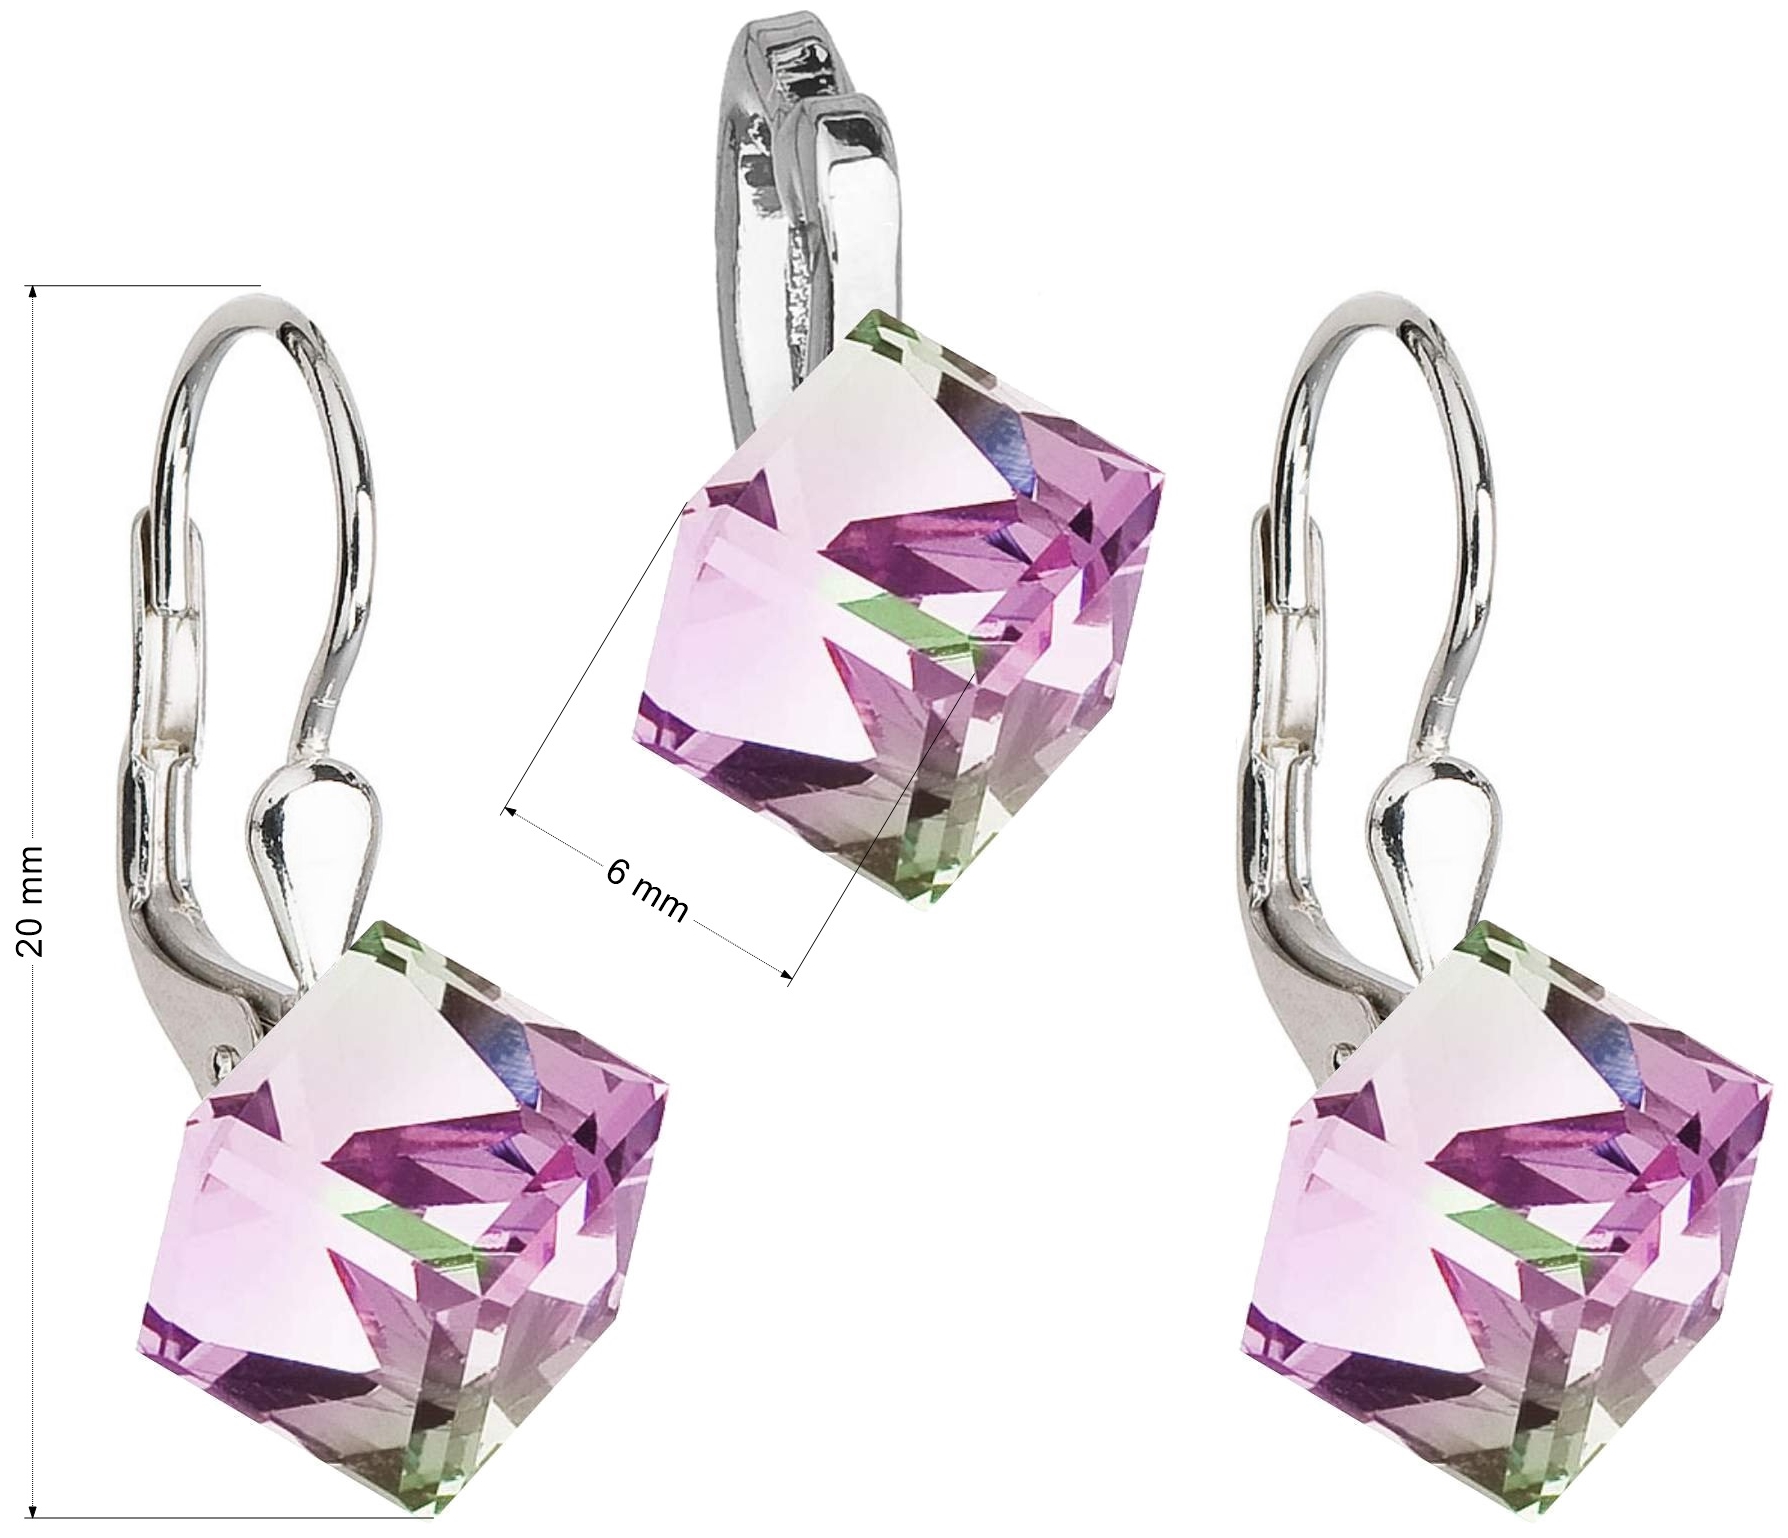 Sada šperkov s kryštálmi náušnice a prívesok fialová kocka 39068.5 vitrail light